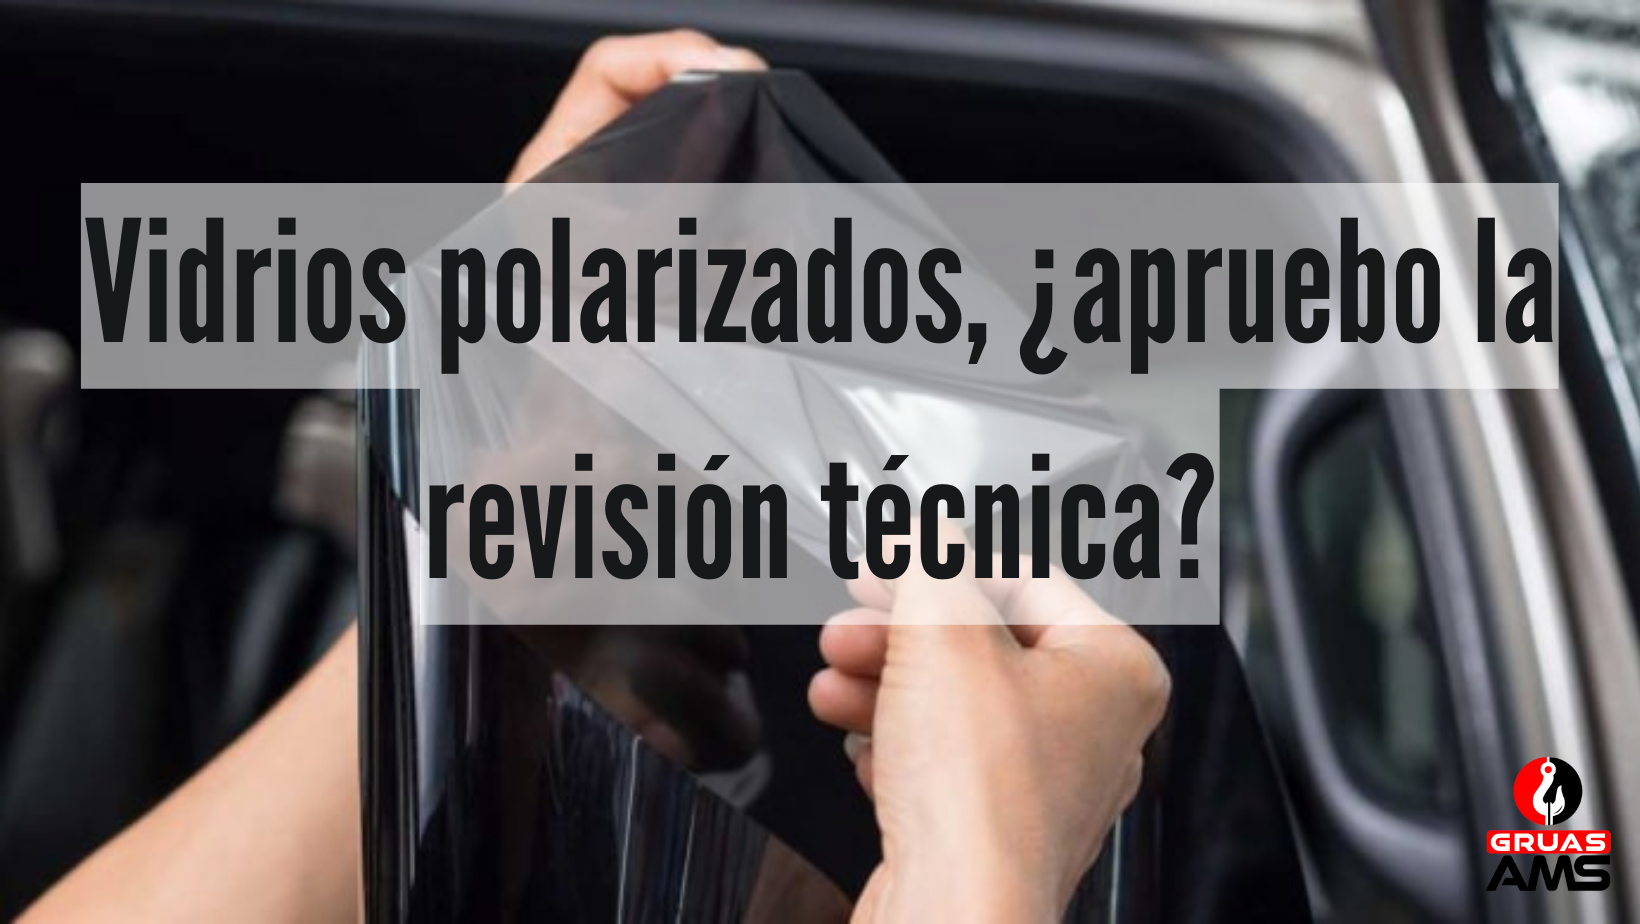 Si mi auto tiene vidrios polarizados, ¿aprueba la revisión técnica?